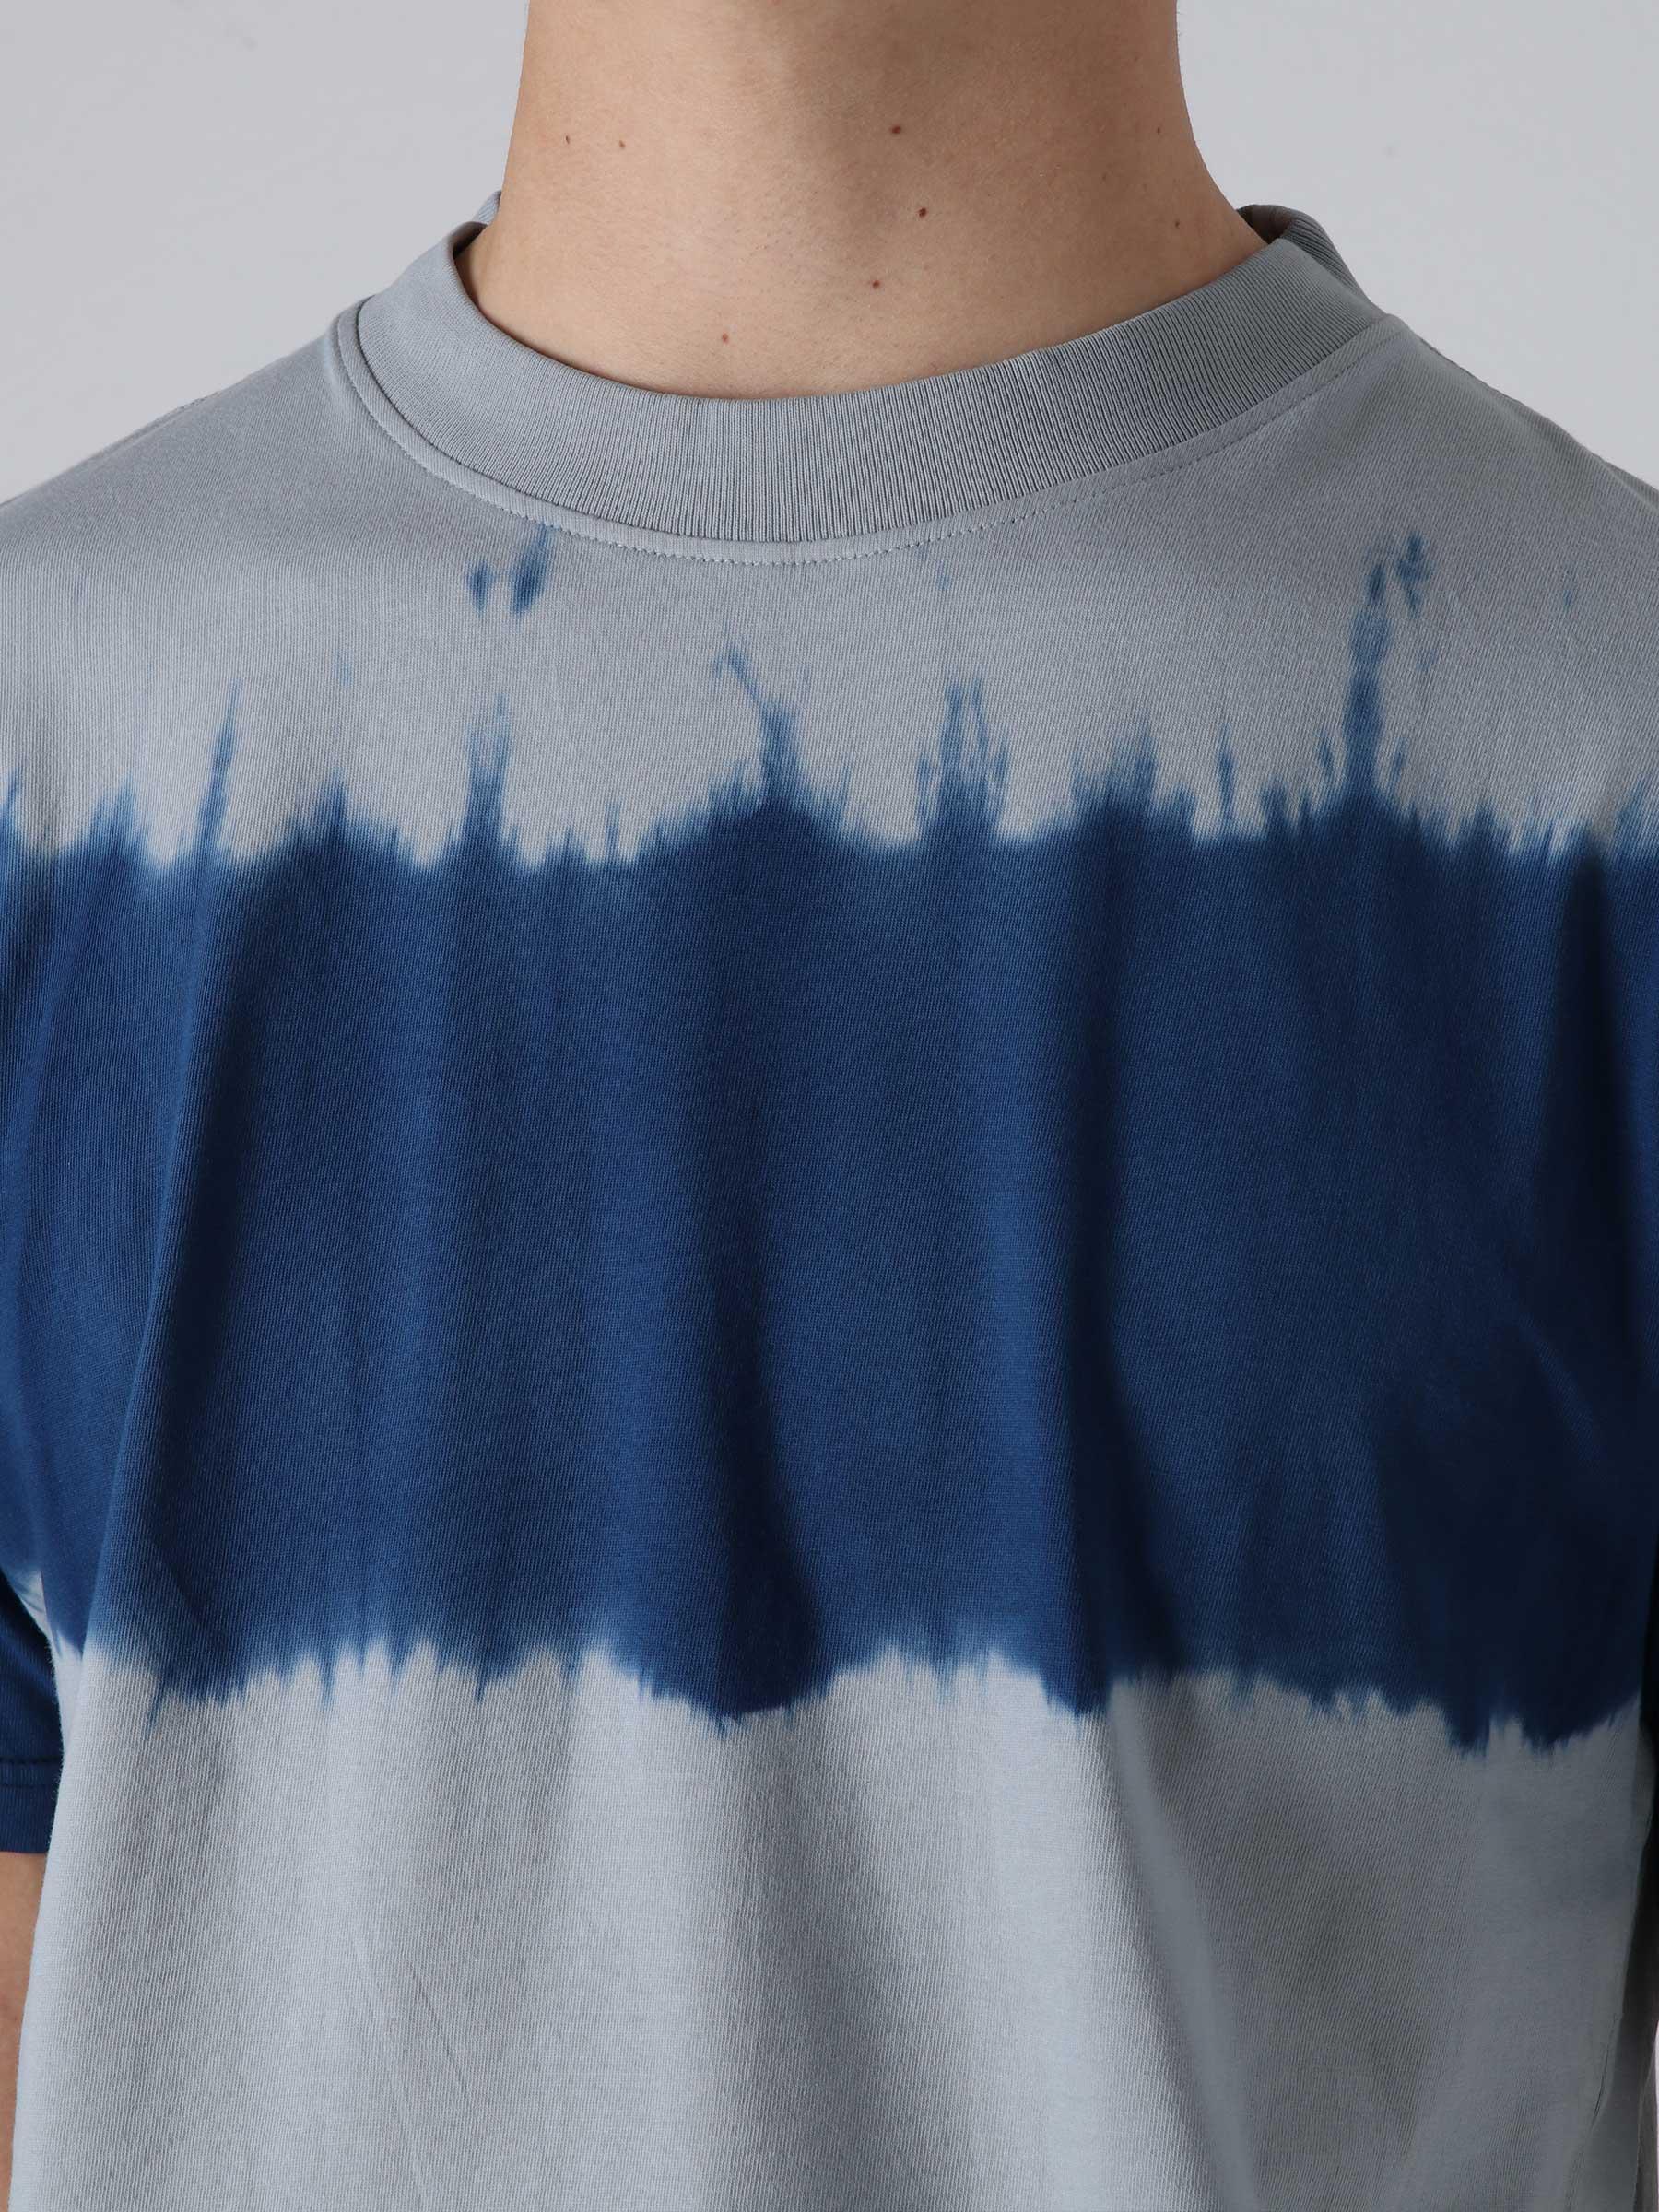 Olaf Wavy T-Shirt Blue Grey SS22_0010